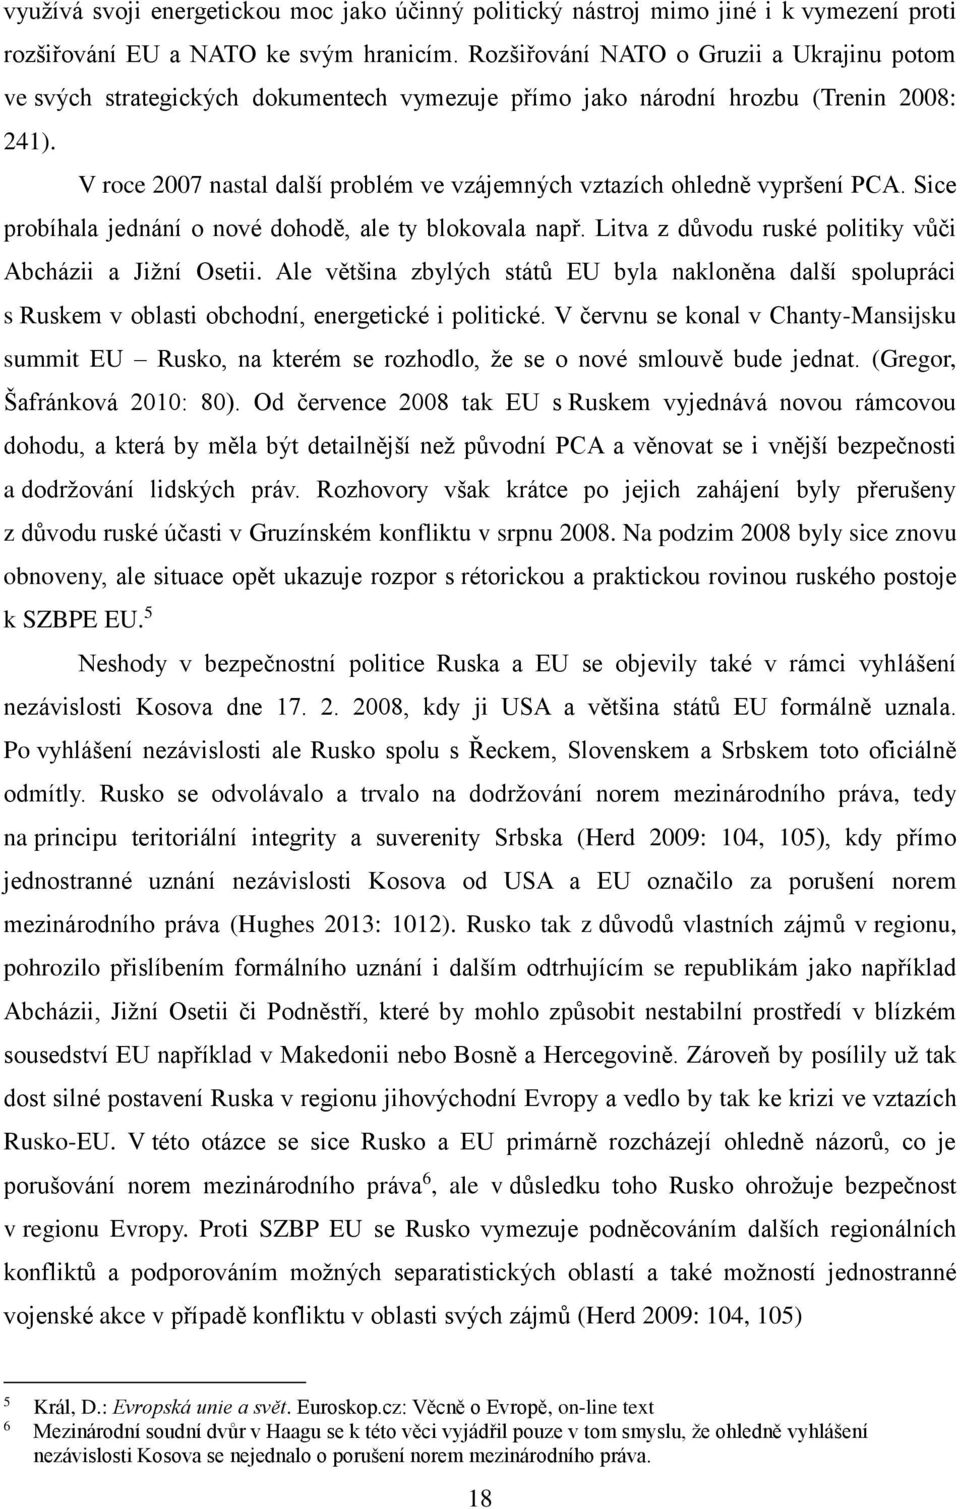 V roce 2007 nastal další problém ve vzájemných vztazích ohledně vypršení PCA. Sice probíhala jednání o nové dohodě, ale ty blokovala např. Litva z důvodu ruské politiky vůči Abcházii a Jižní Osetii.